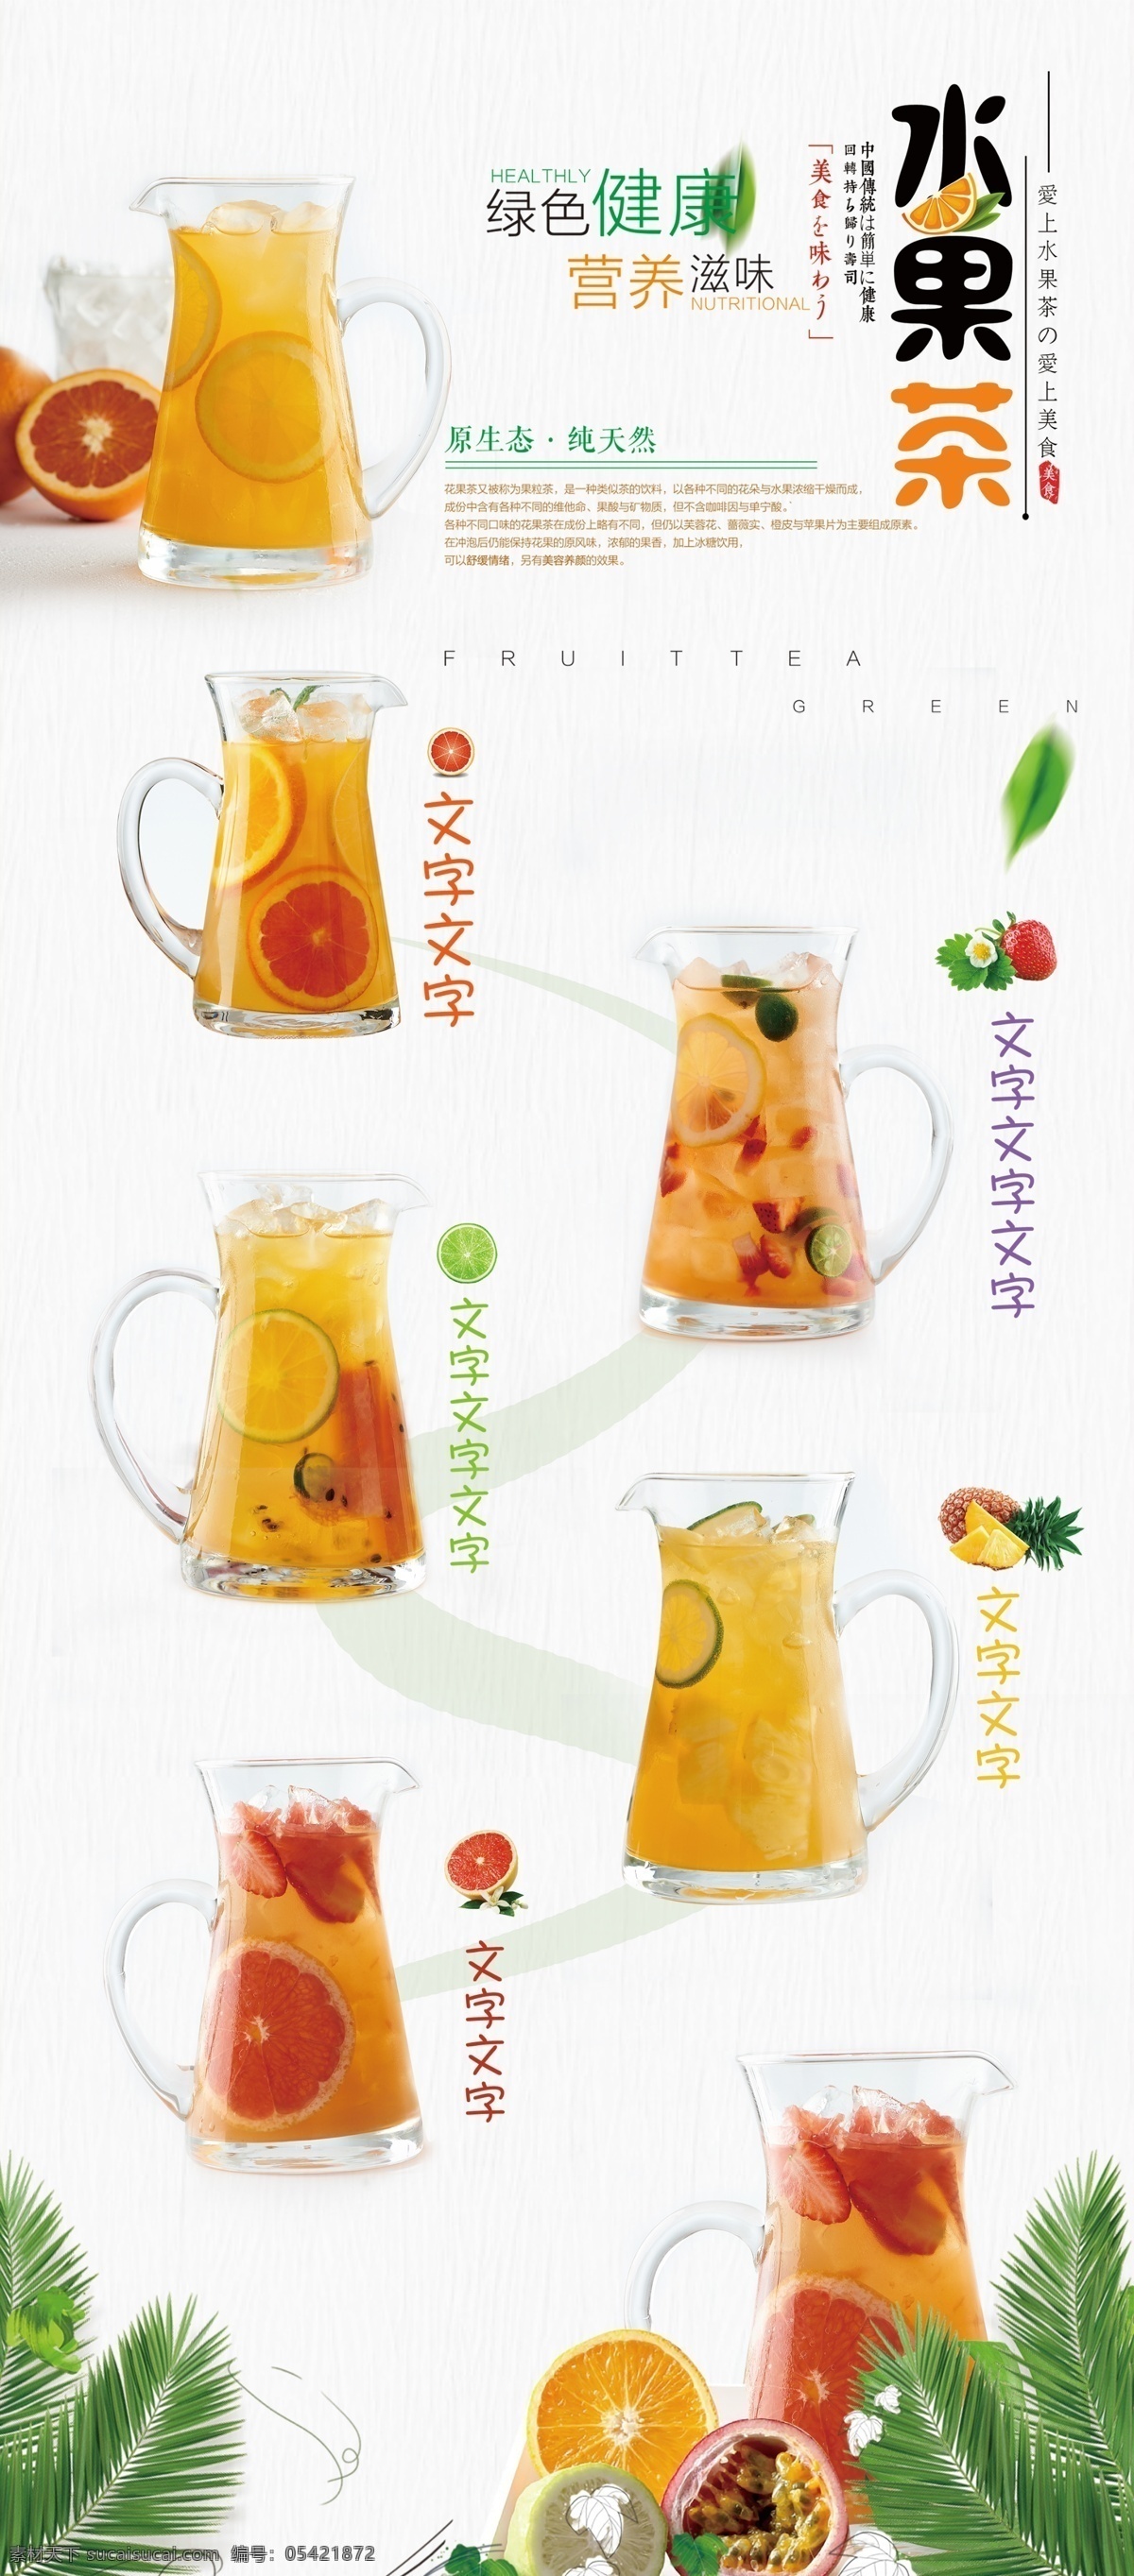 水果 茶 易拉宝 展架 海报 水果茶 绿色健康 鲜榨 夏日风情 营养滋味 橙汁 果汁 fruit 饮品